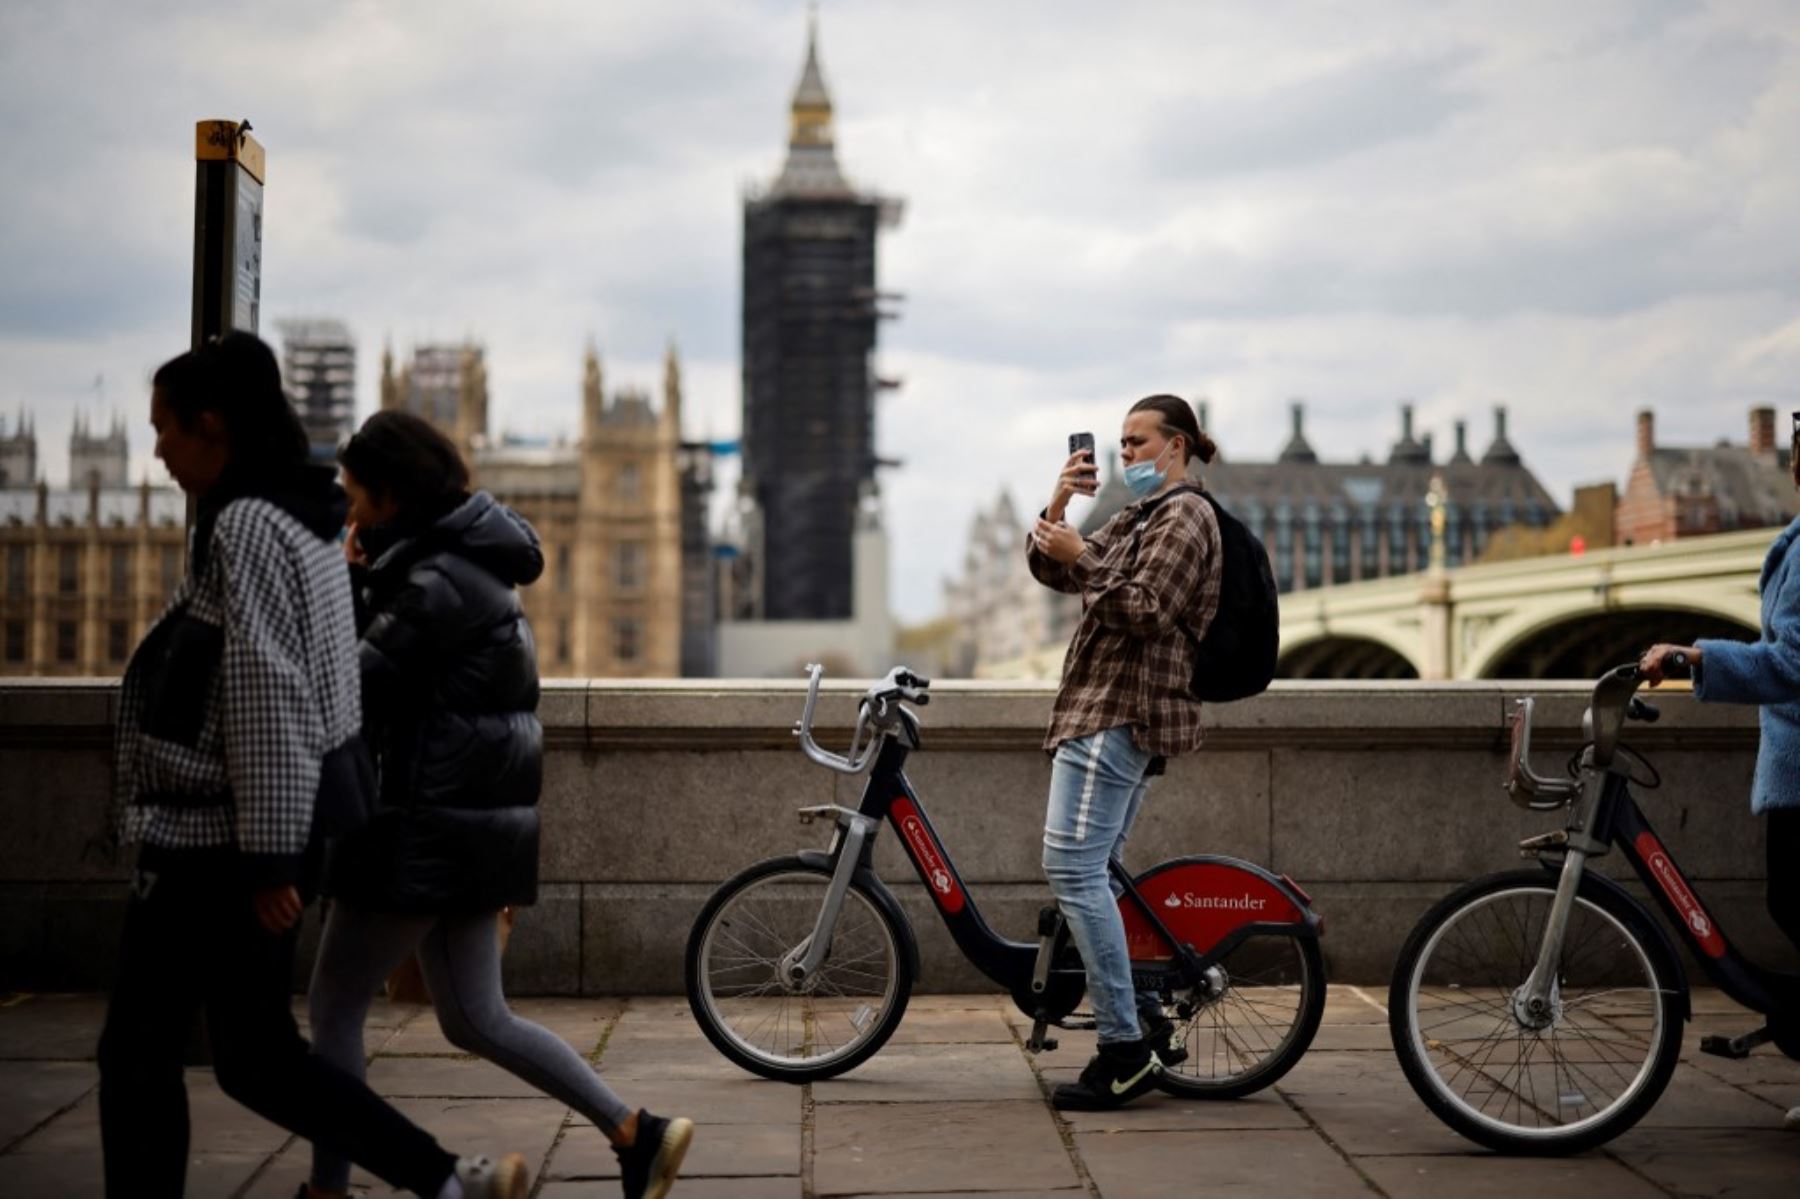 Una persona toma una fotografía a lo largo del terraplén frente a las Casas del Parlamento en el centro de Londres. Foto: AFP